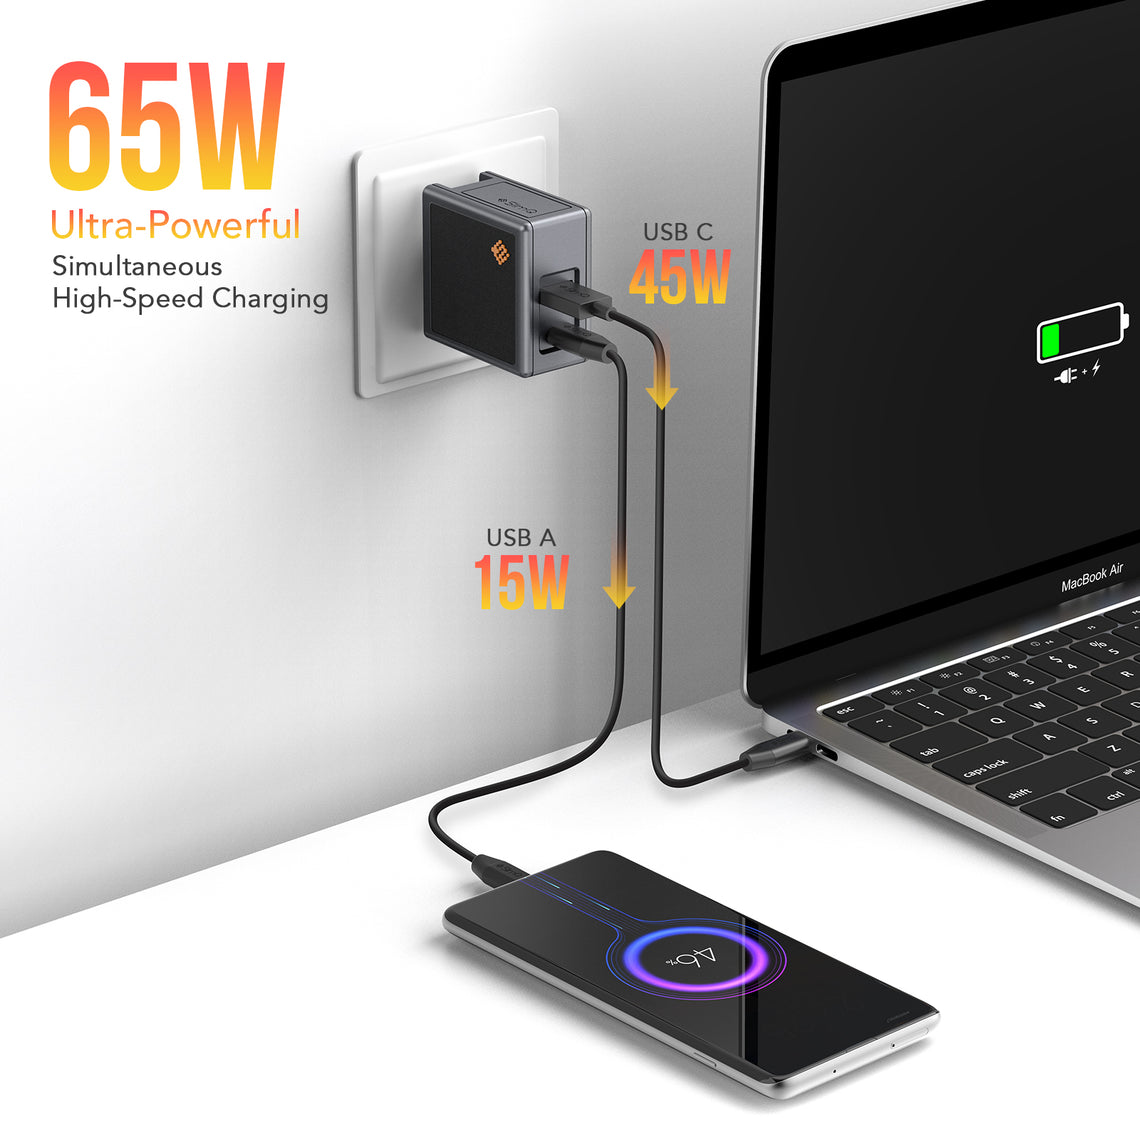 65W USB C GaN 충전기